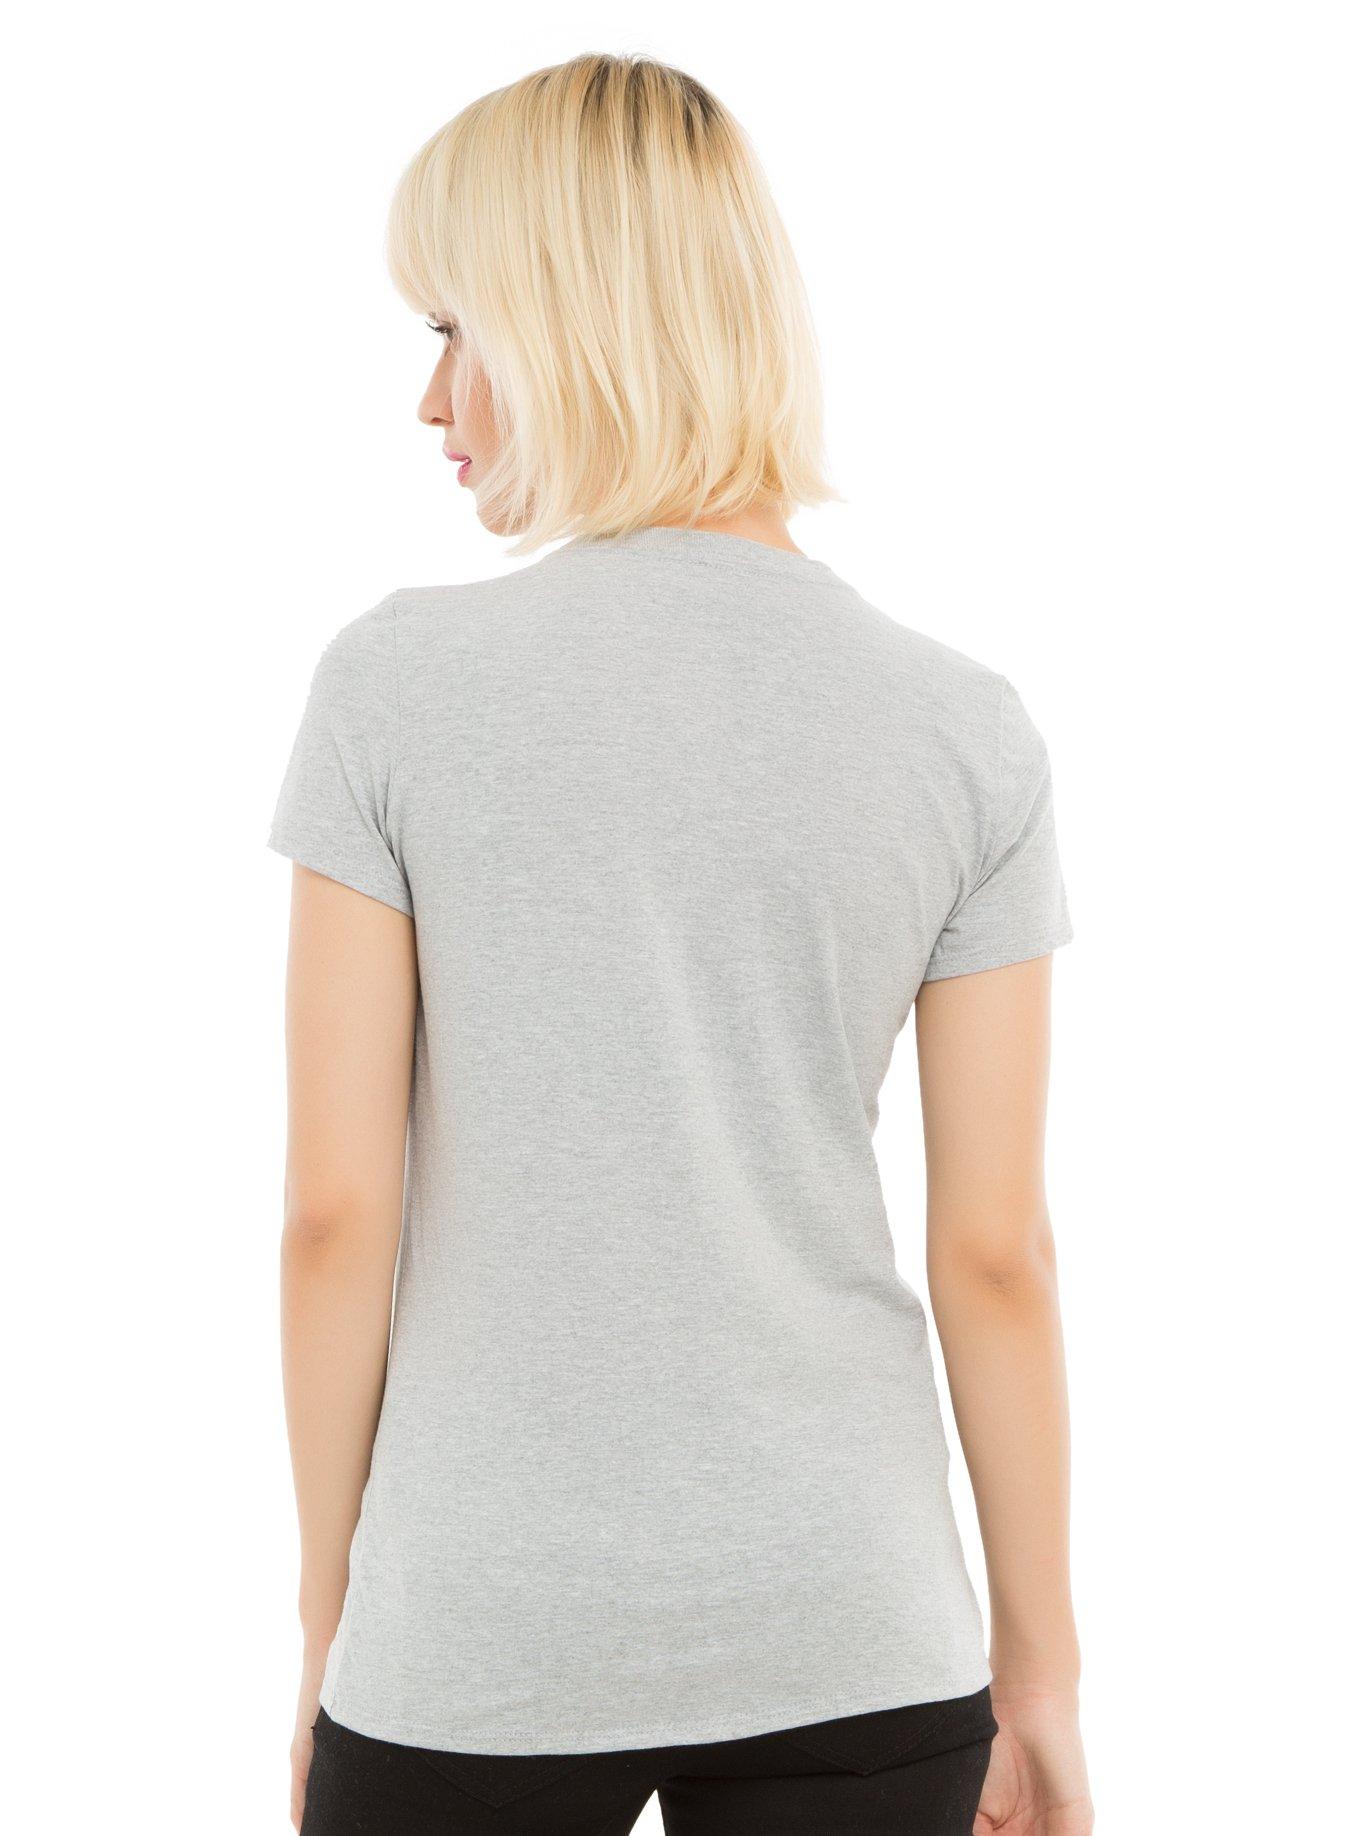 Unirhino Fusion Girls T-Shirt, , alternate